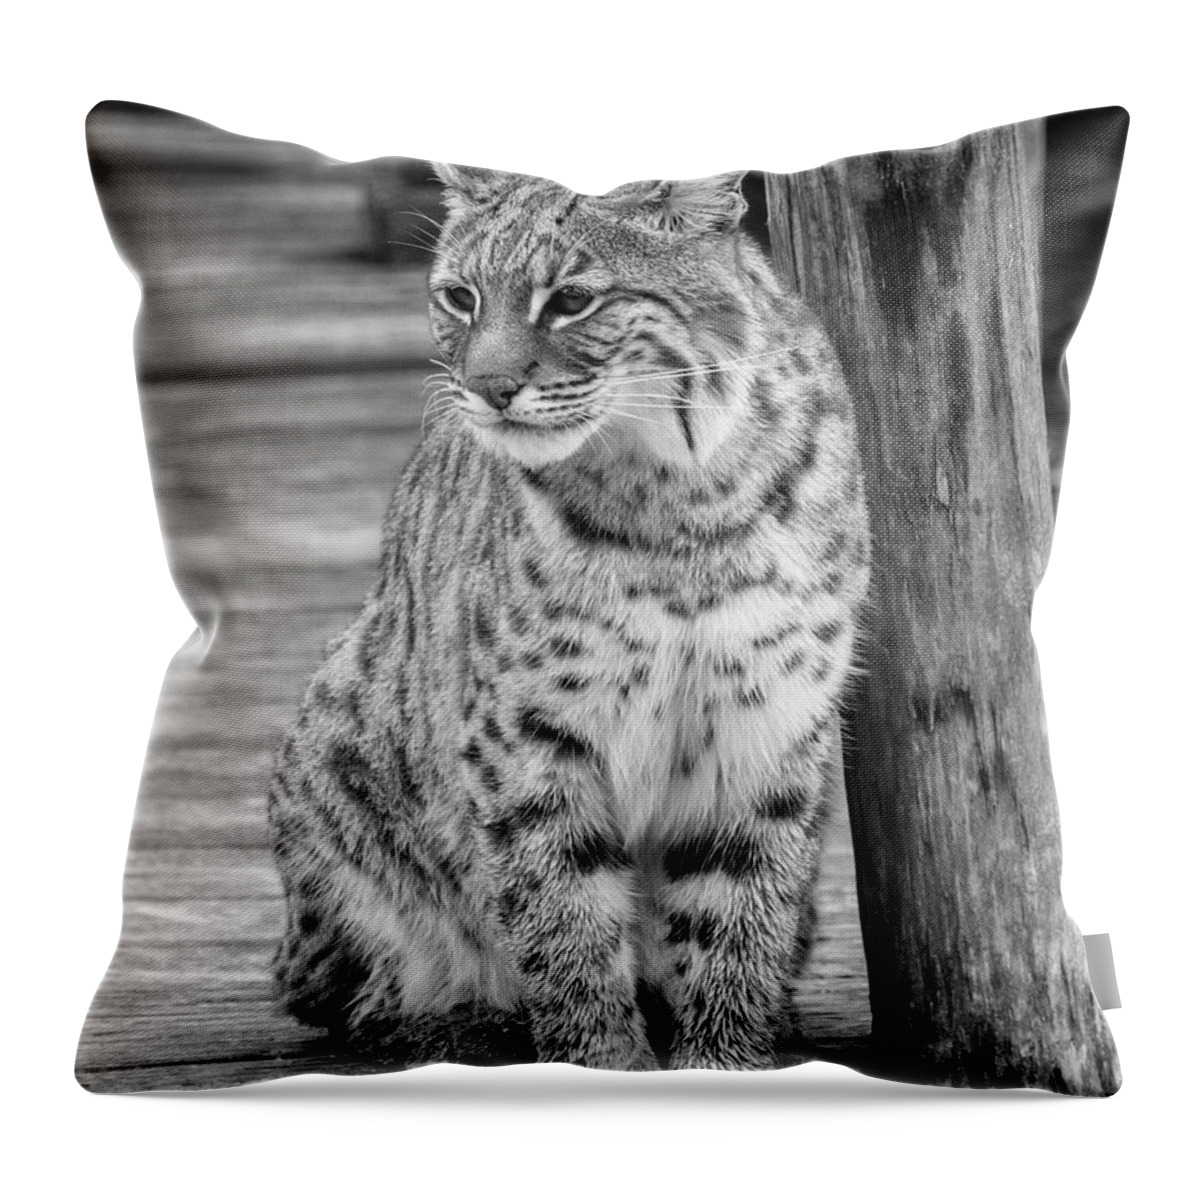 Bobcat Throw Pillow featuring the photograph Bobcat In Monochrome by Jurgen Lorenzen